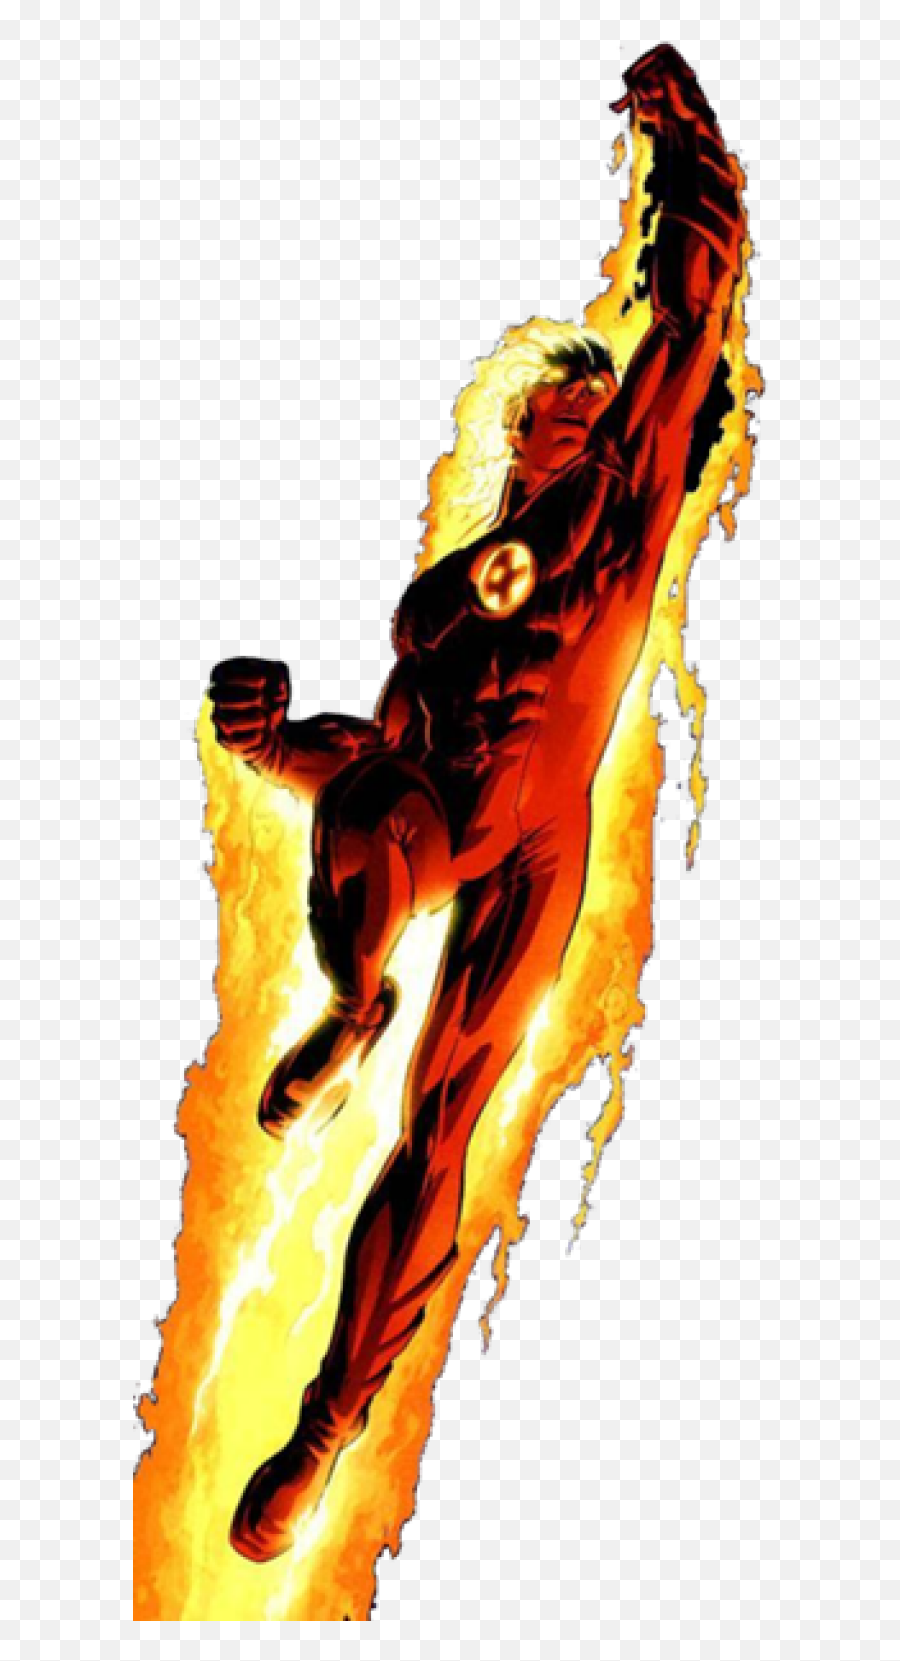 Marvel Fantastic Four Logo Images - Fantastic Four Human Torch Png,Fantastic Four Logo Png